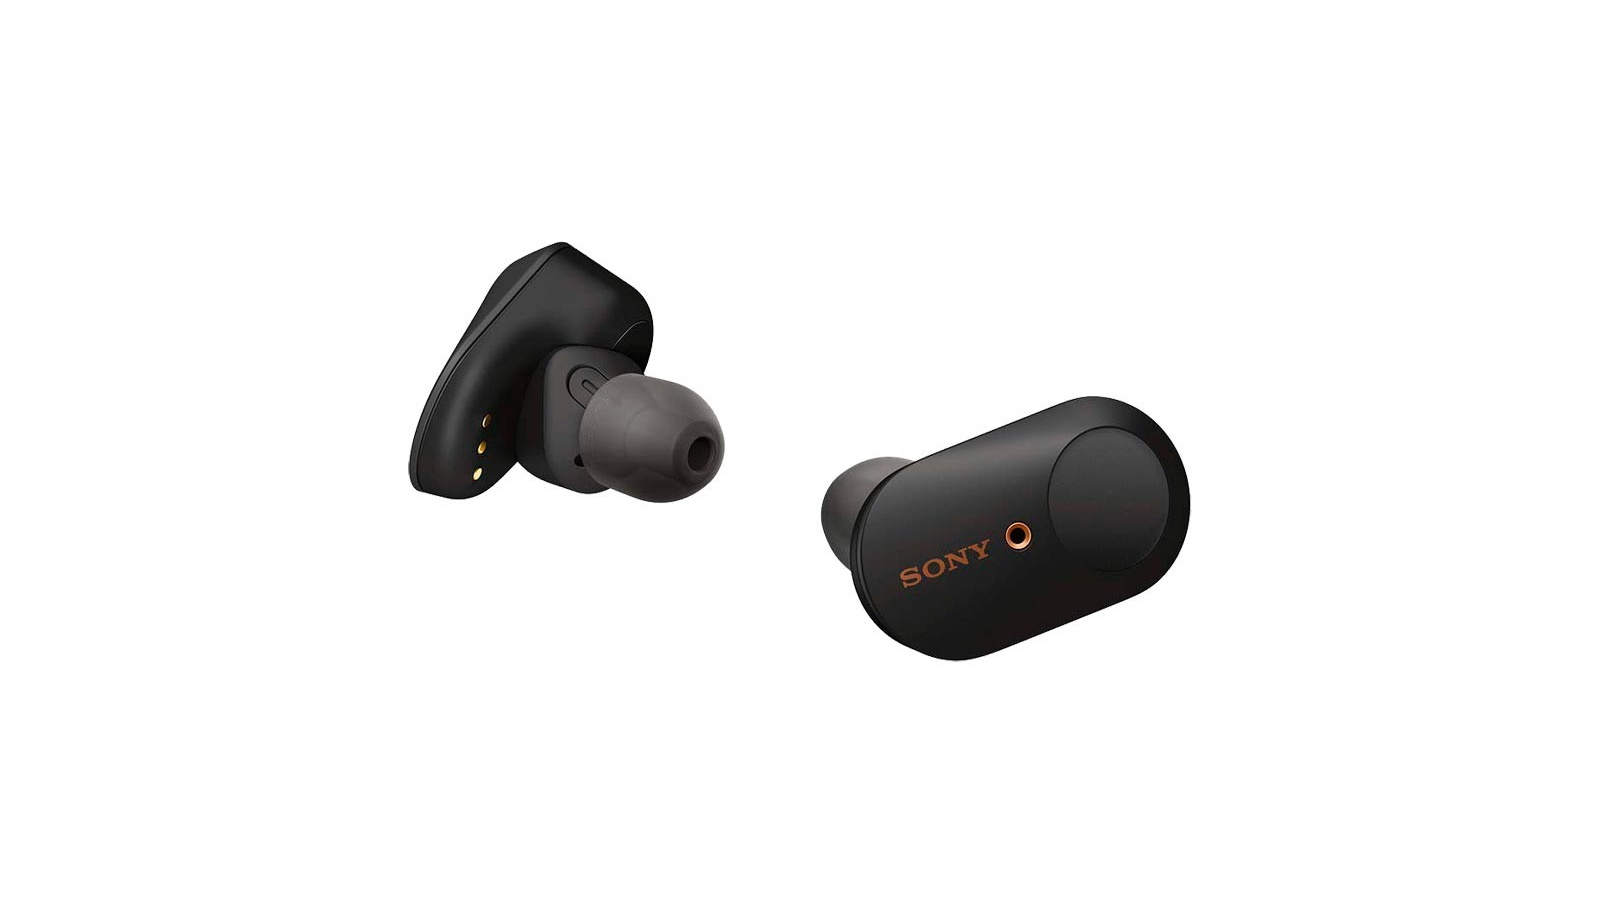 the sony wf-1000xm3 wireless earbuds